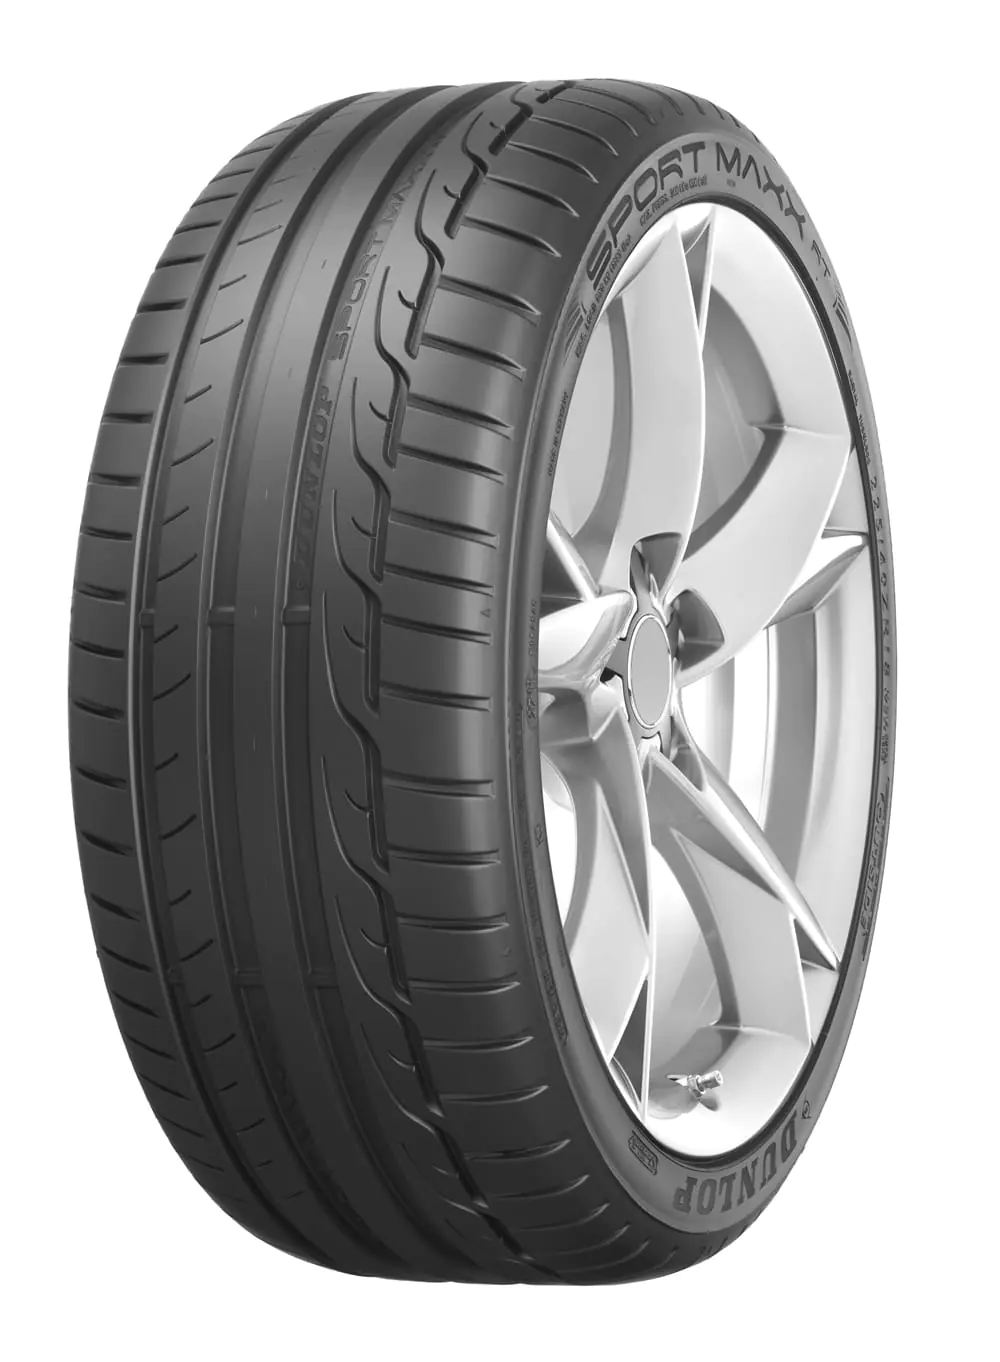 Dunlop Dunlop 215/55 R16 97Y SP.MAXX RT MFS XL pneumatici nuovi Estivo 